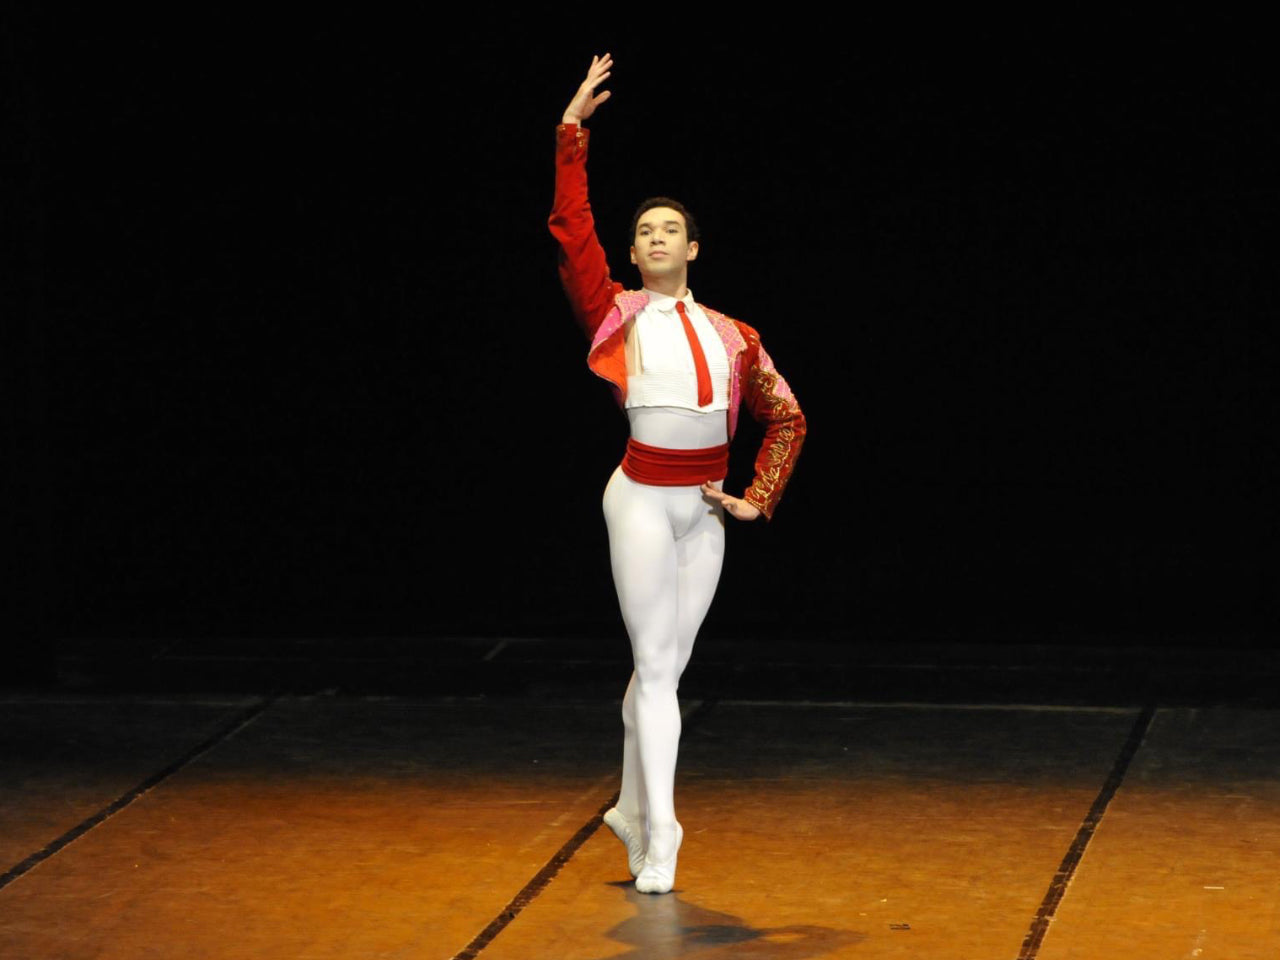 Alysson Rocha - Intermediate ballet class